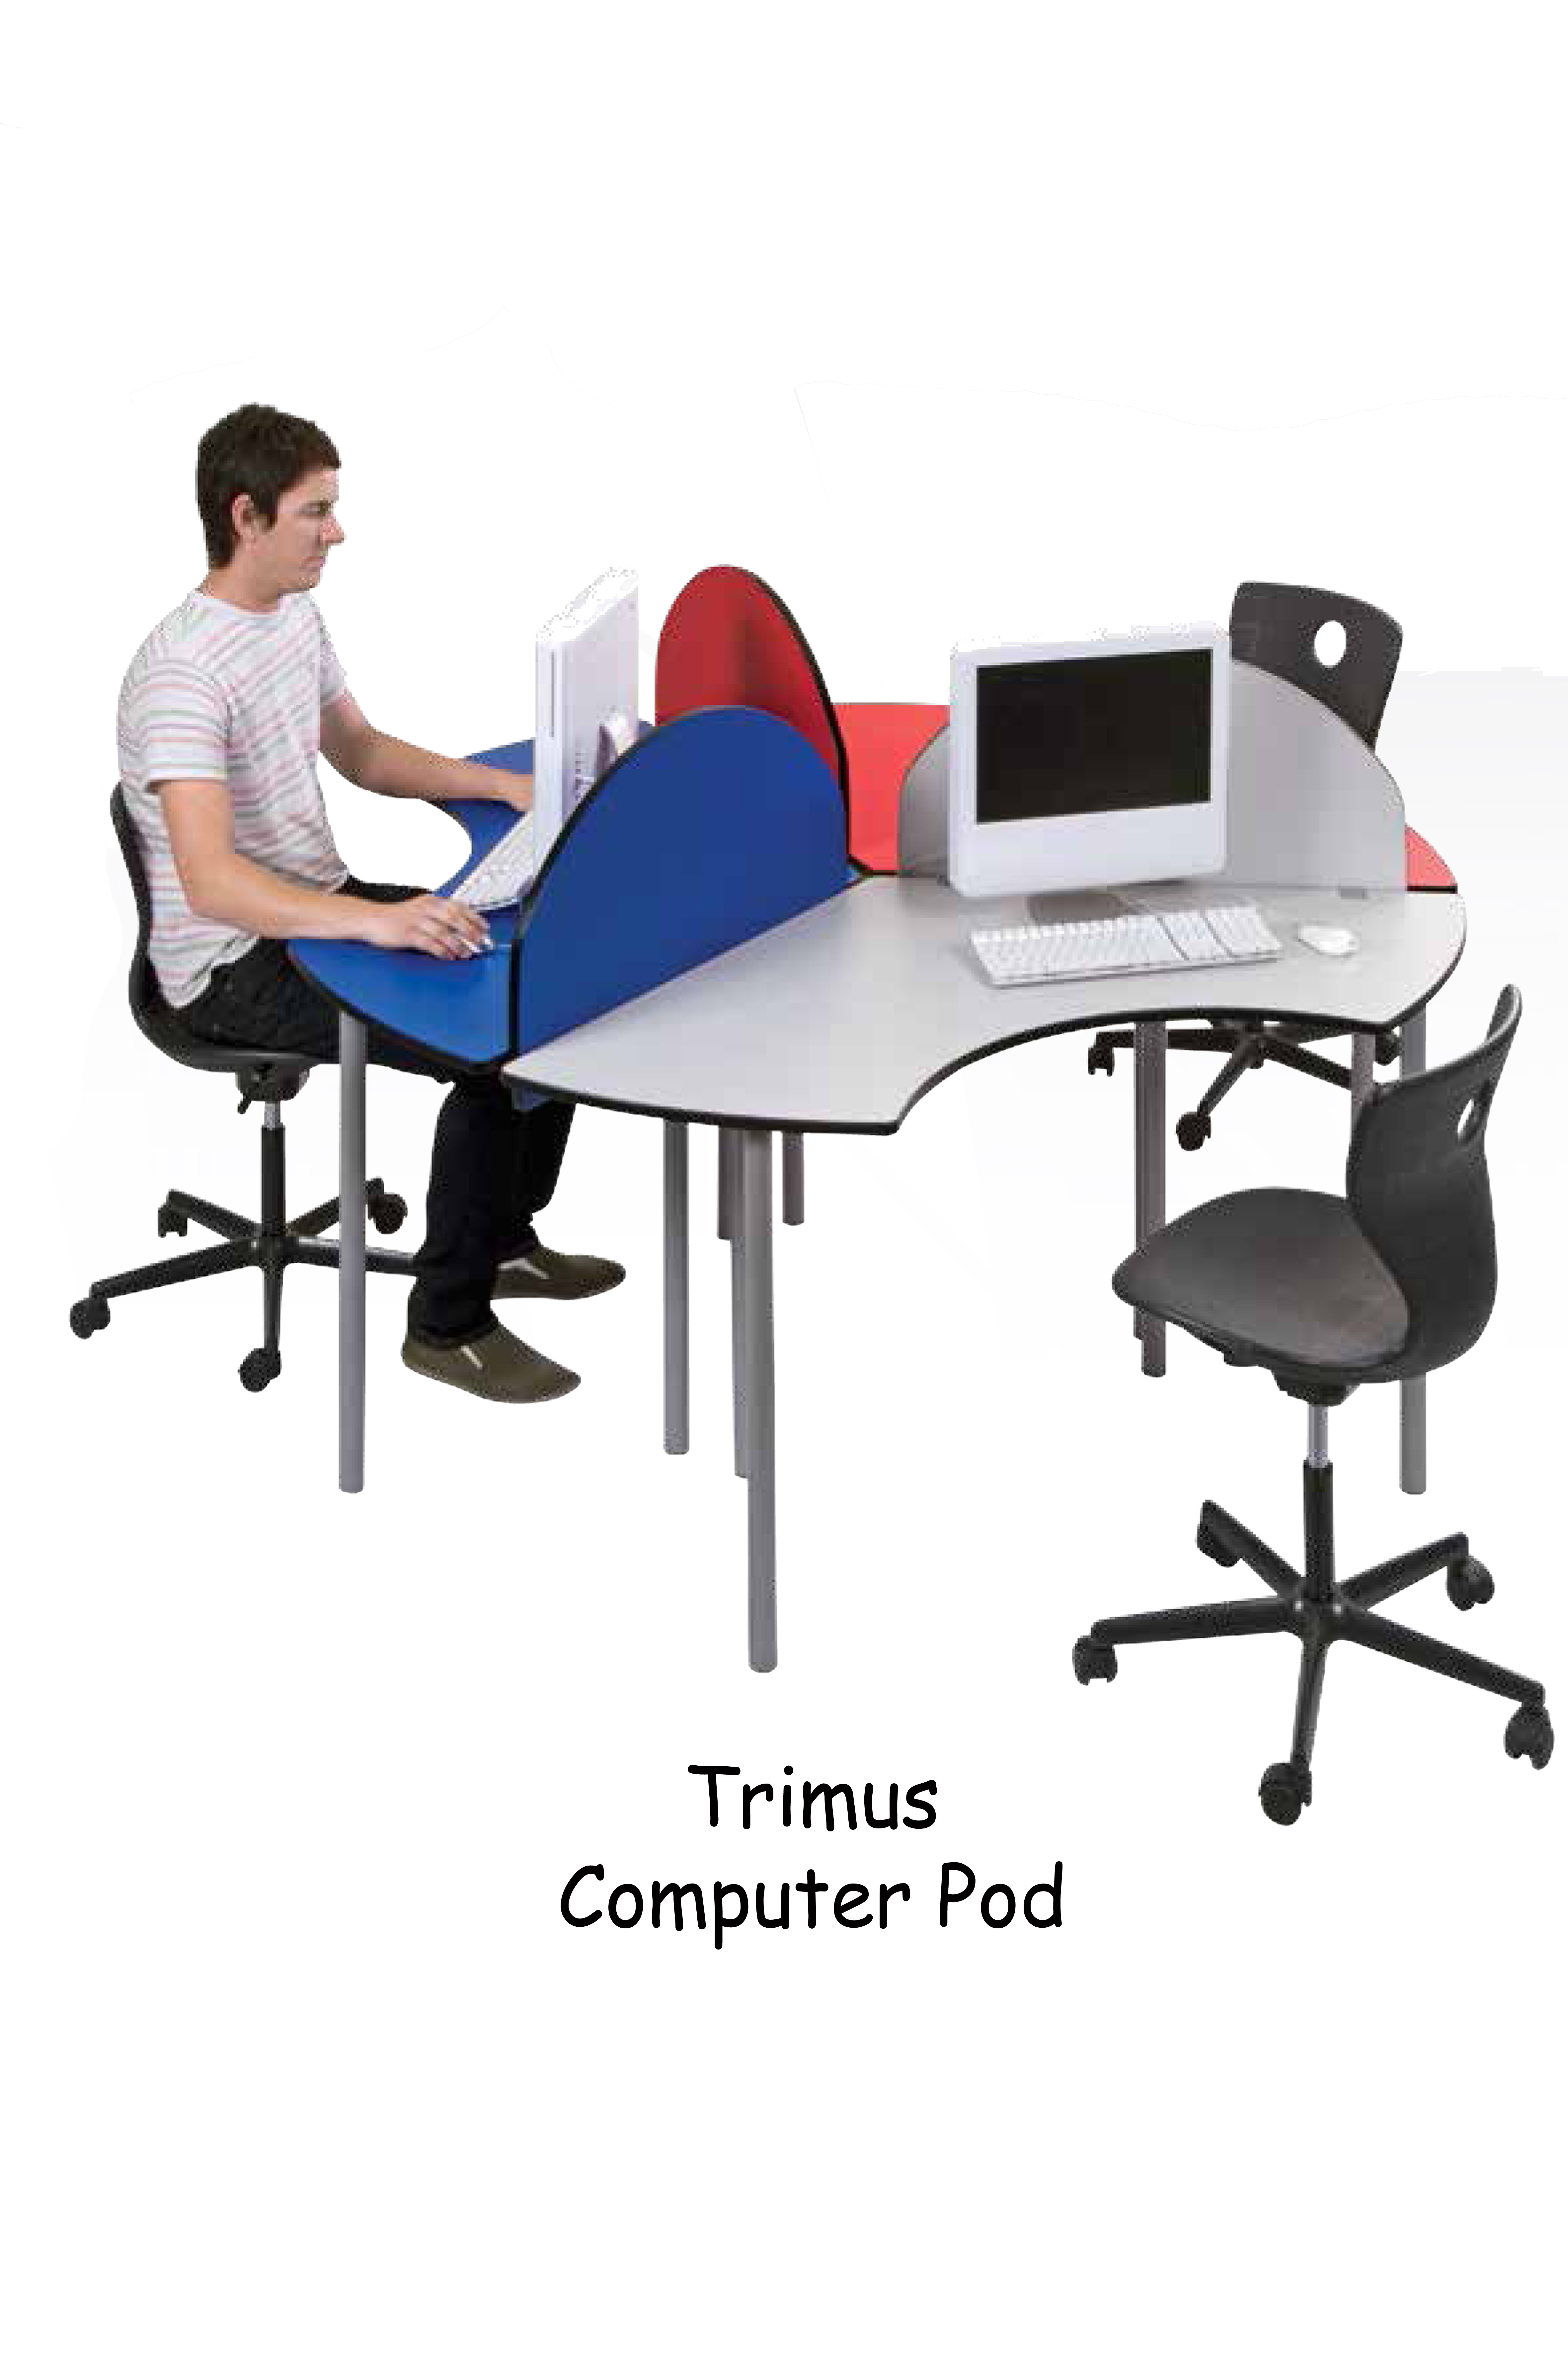 TRIMUS COMPUTER POD